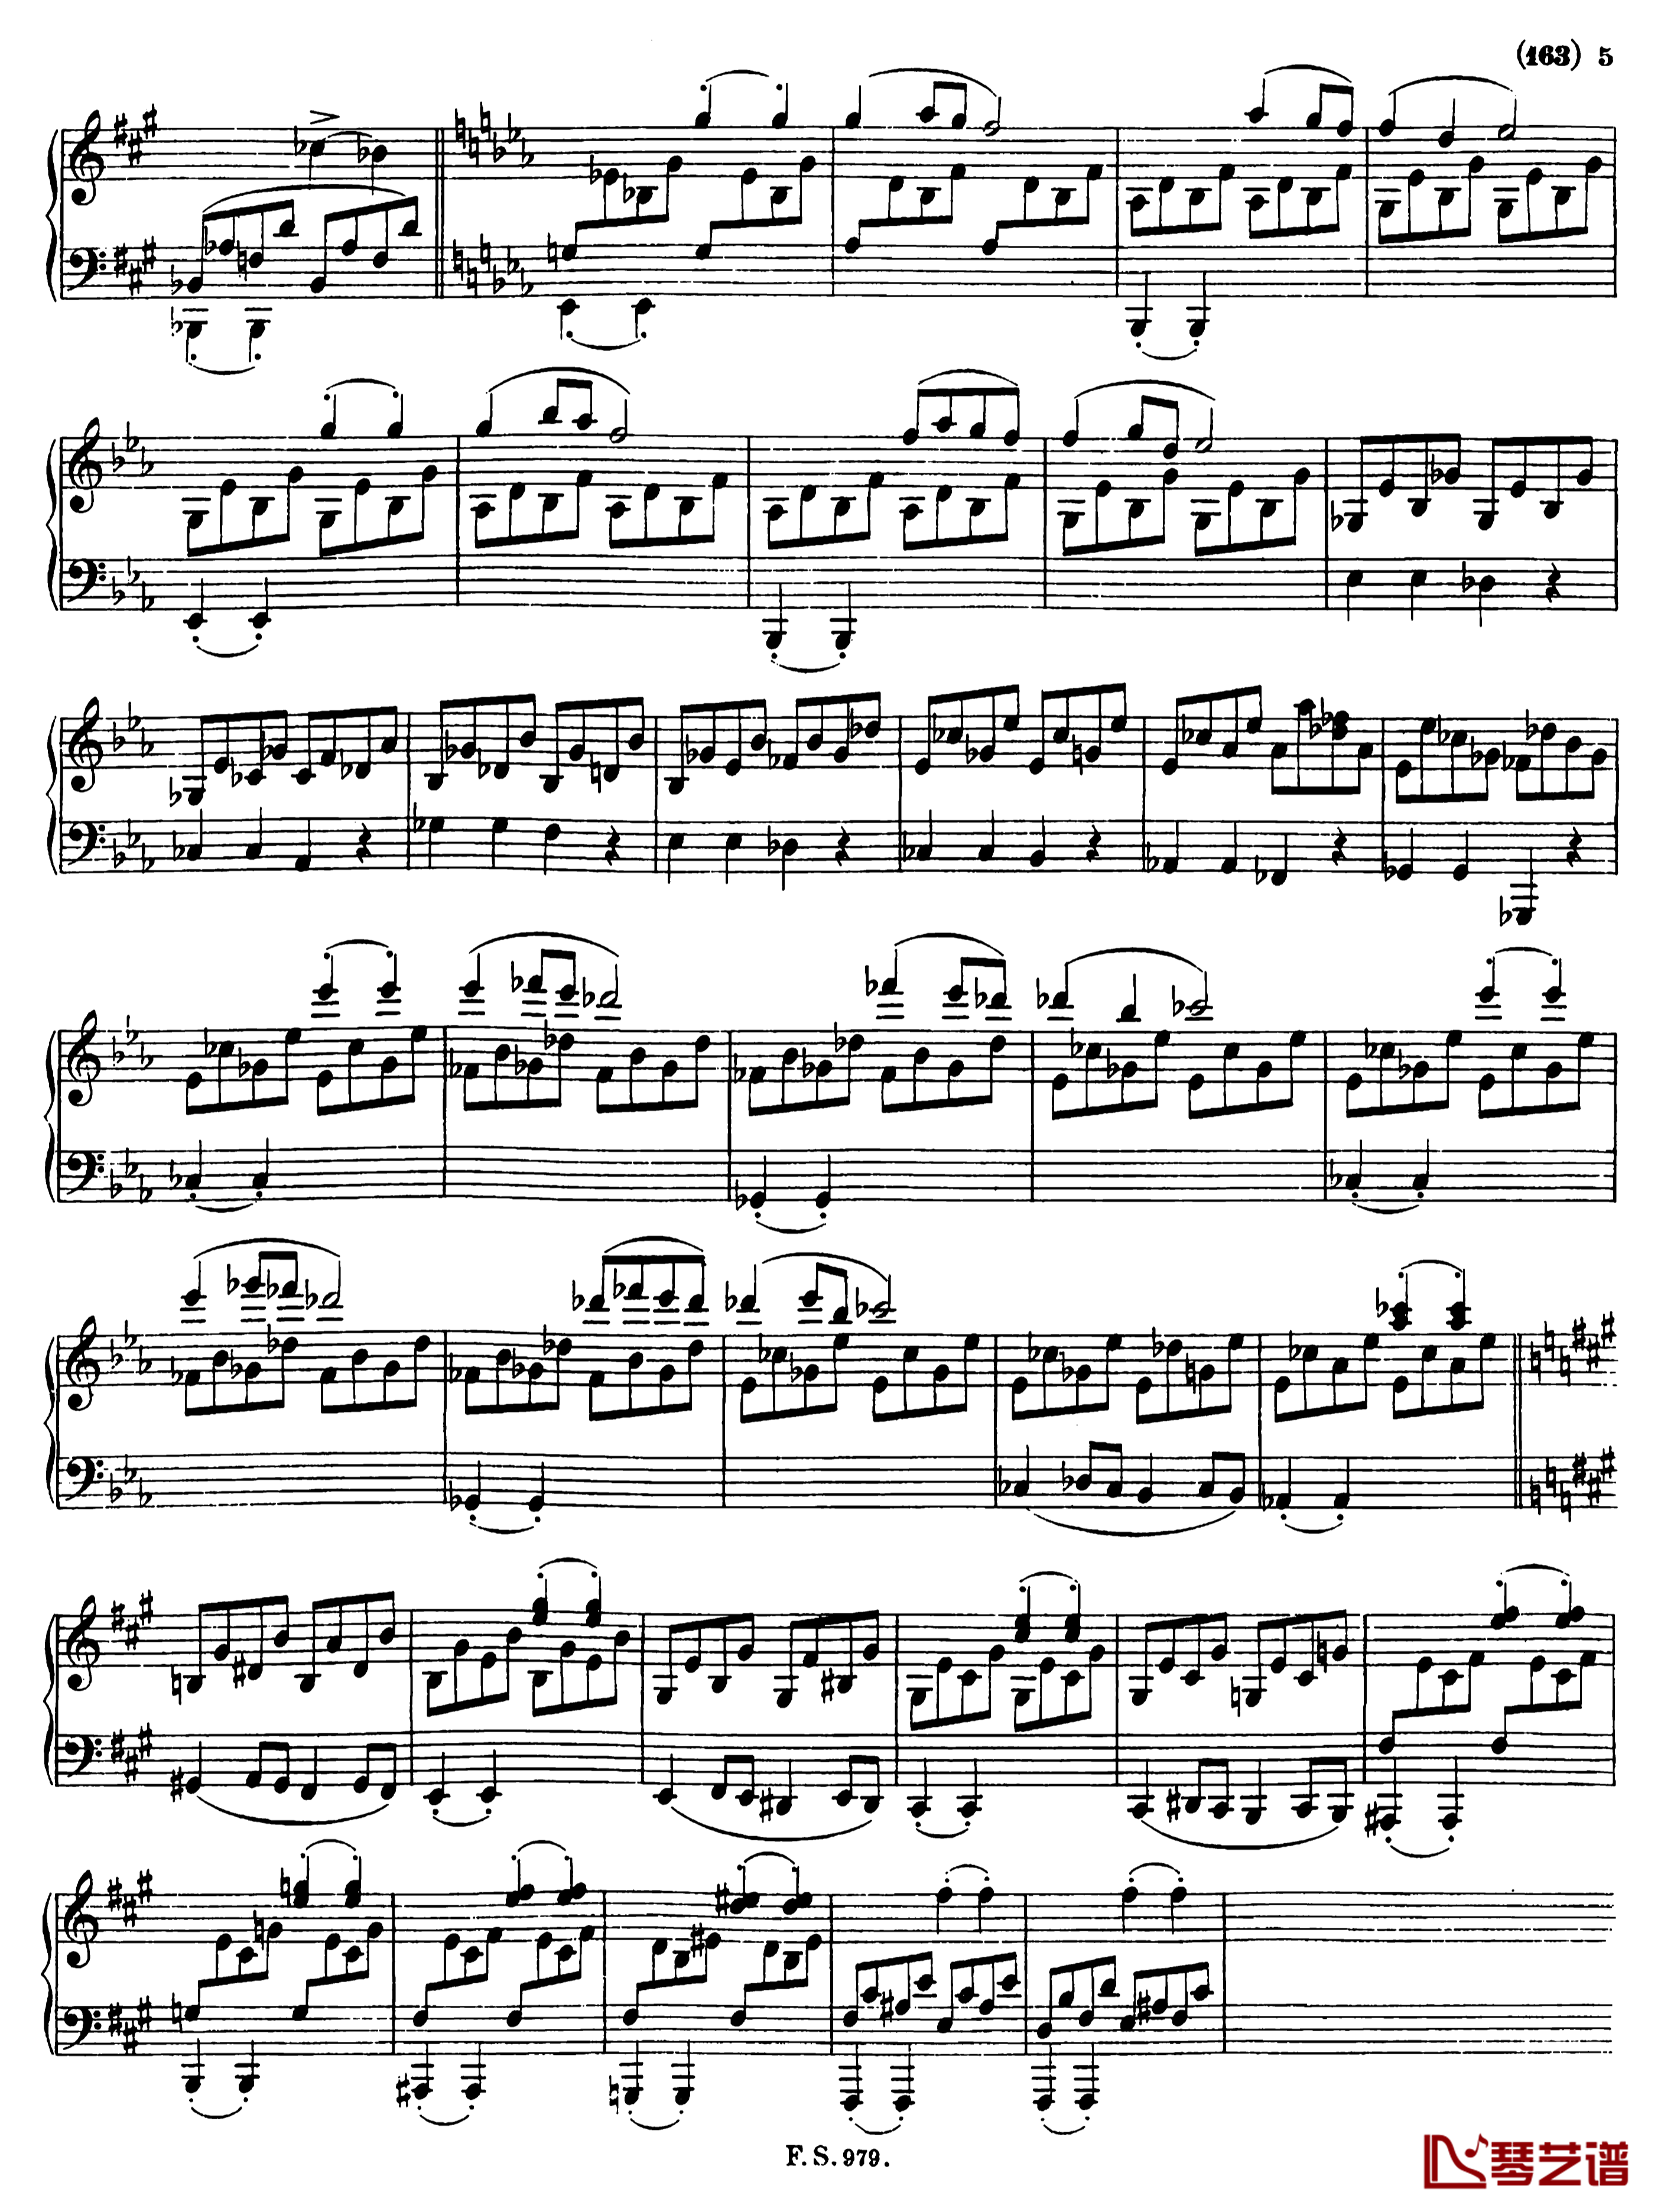 升f小调钢琴奏鸣曲D.571钢琴谱-李斯特-舒伯特4